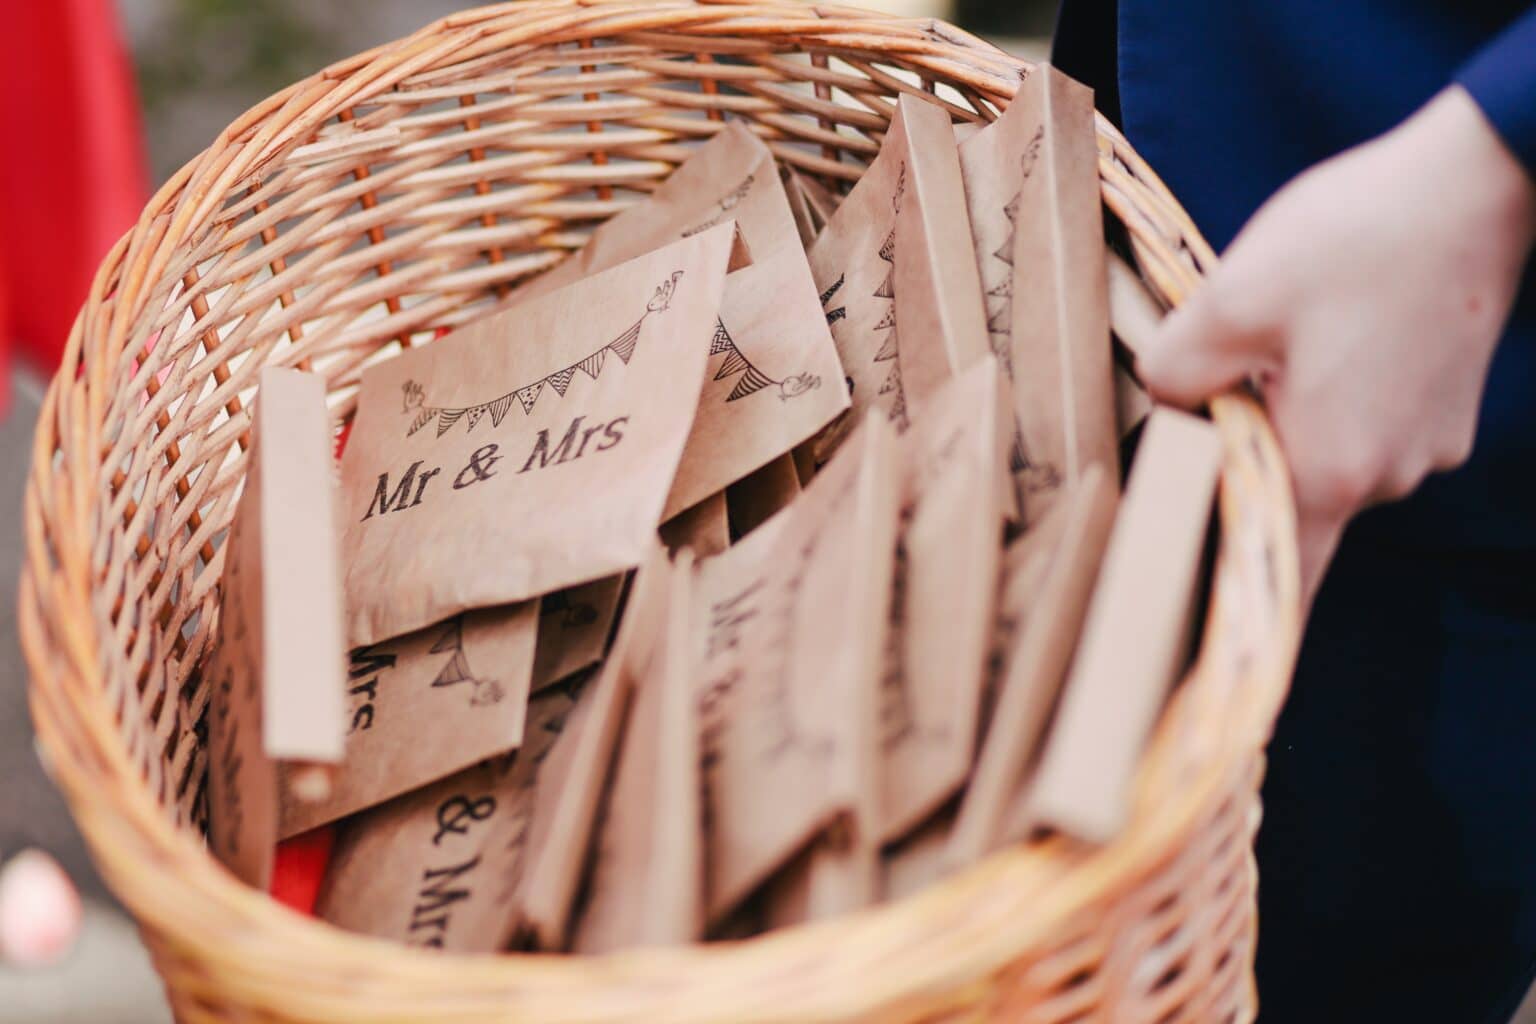 Basket of wedding cards